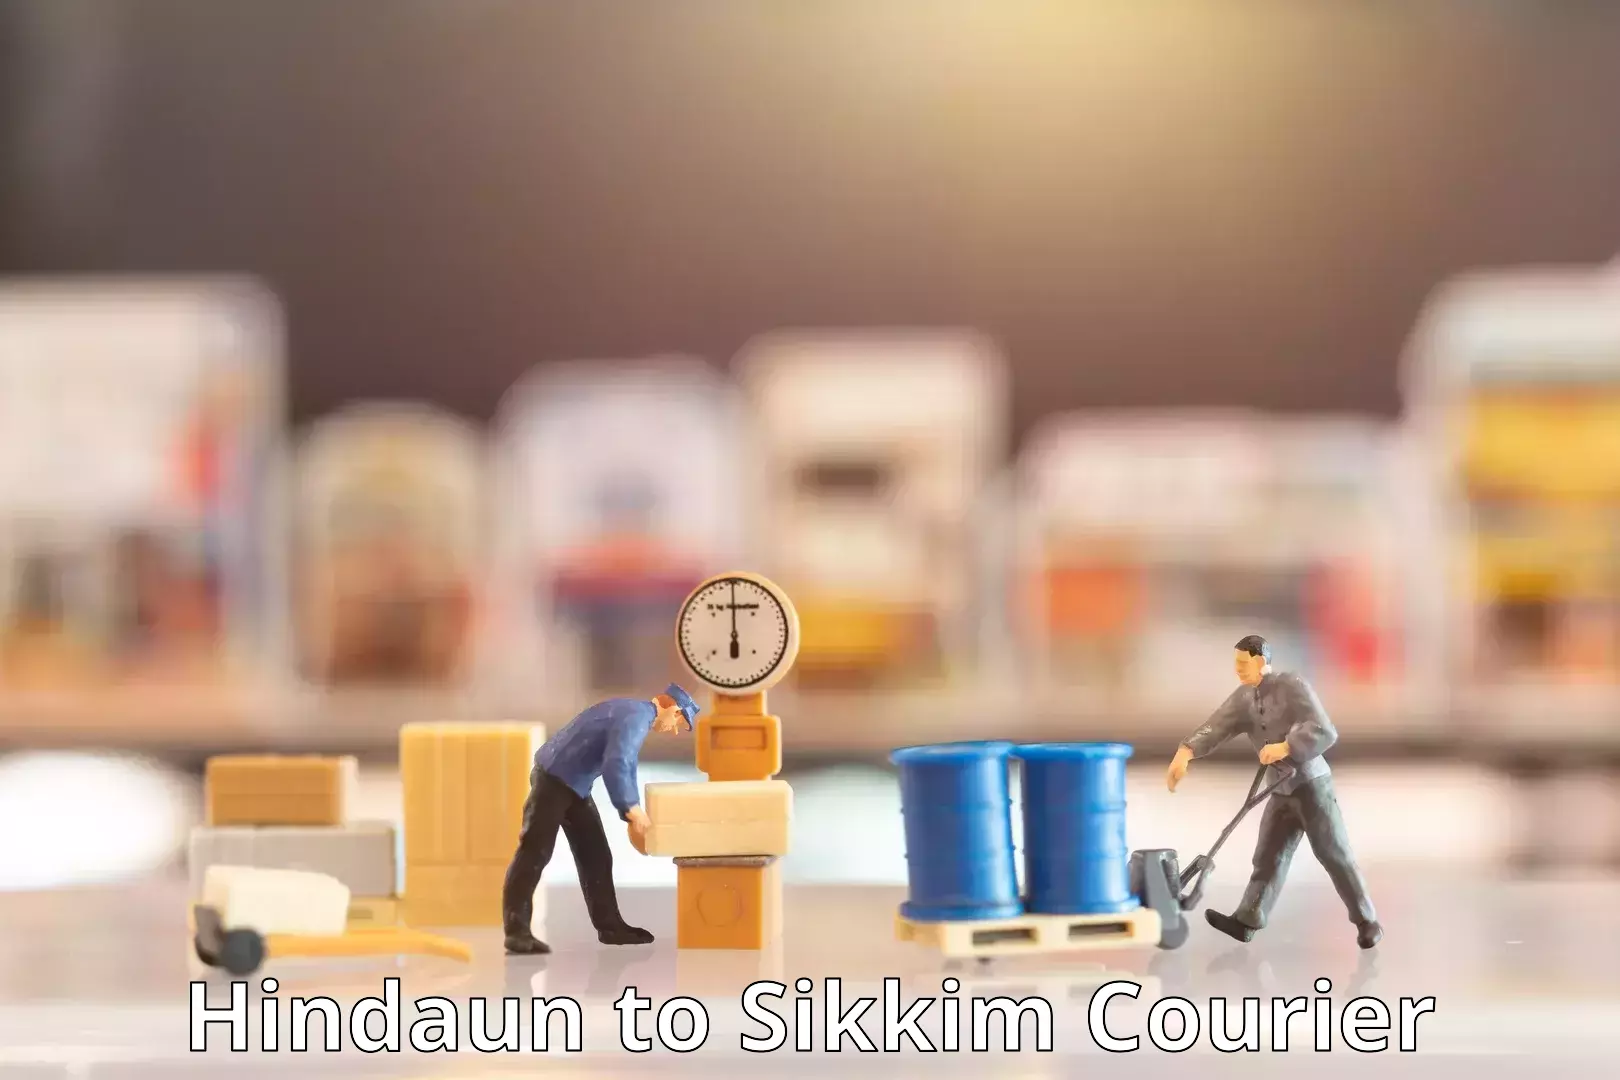 Quick booking process Hindaun to Sikkim